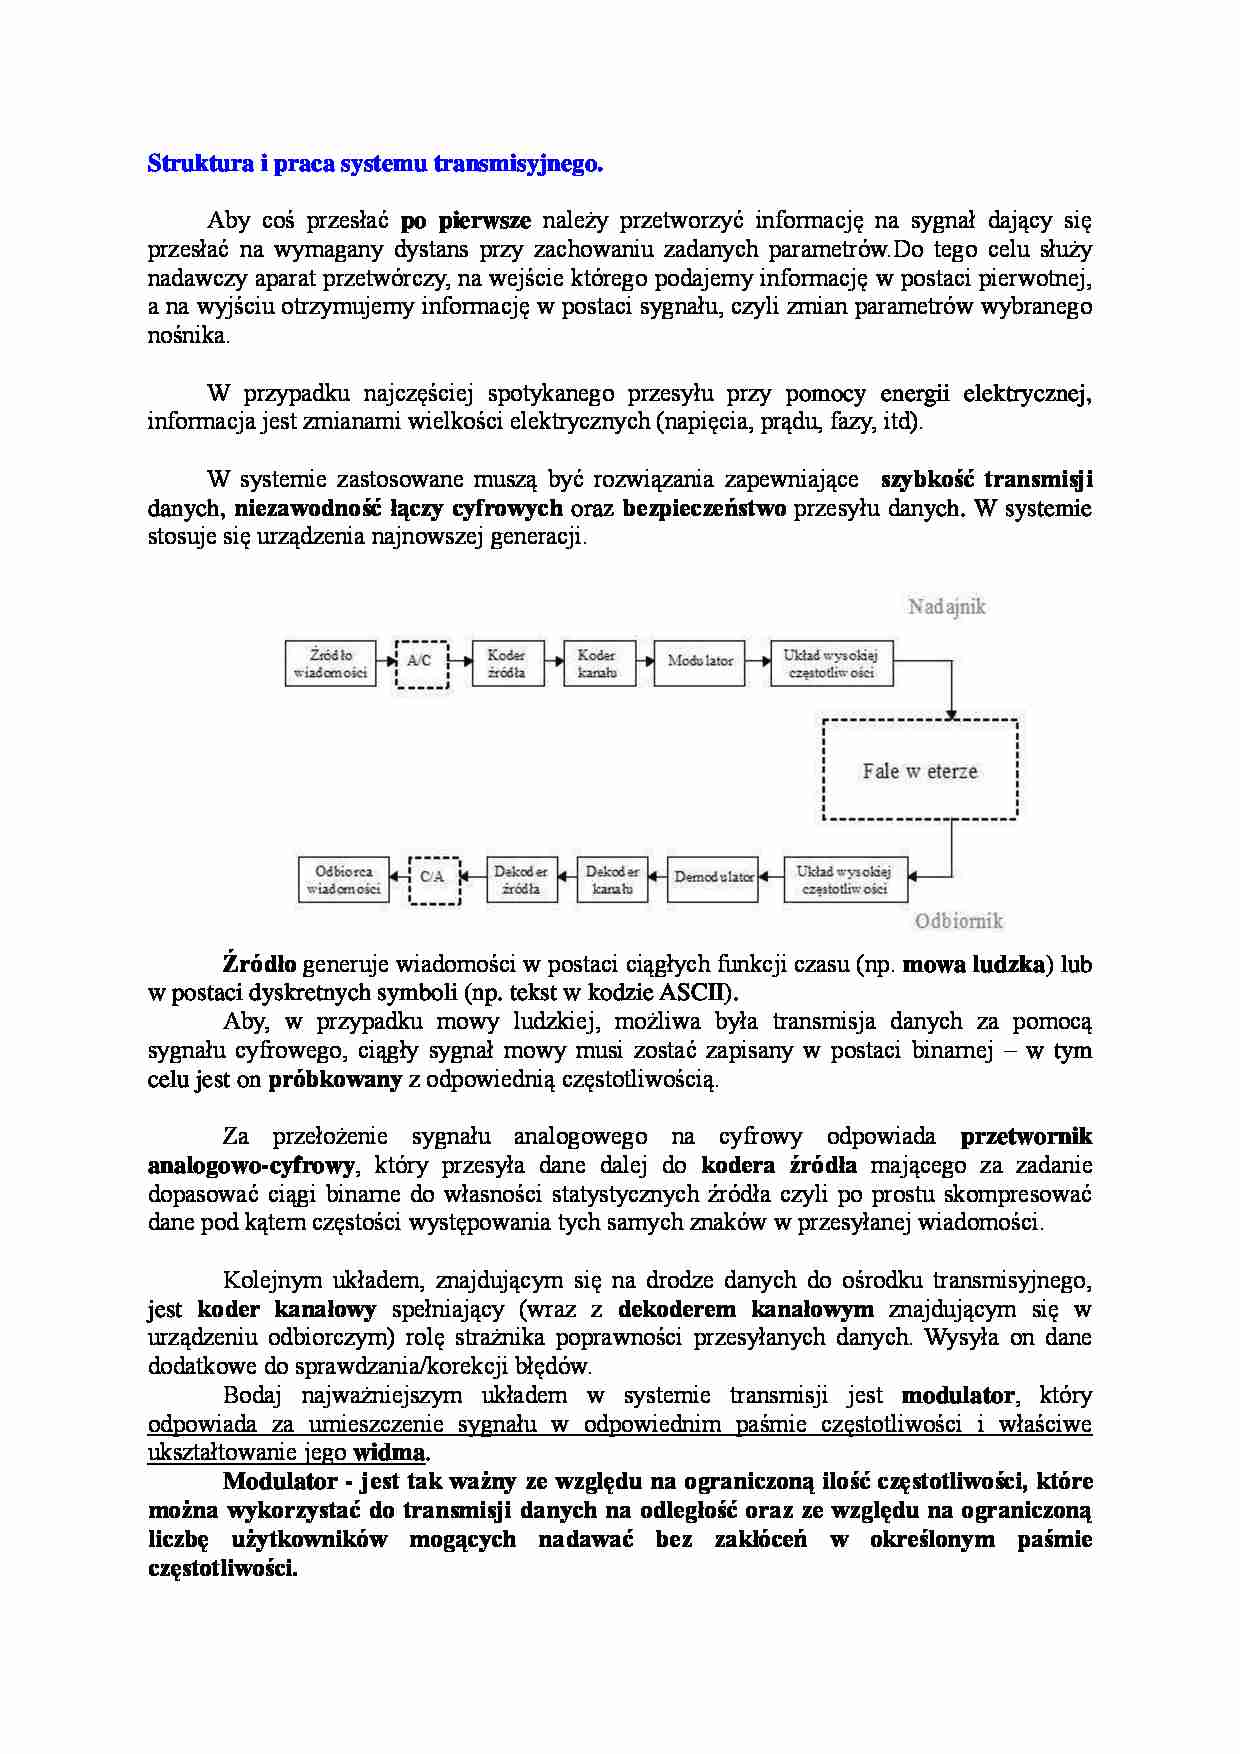 Struktura i praca systemu transmisyjnego-opracowanie - strona 1